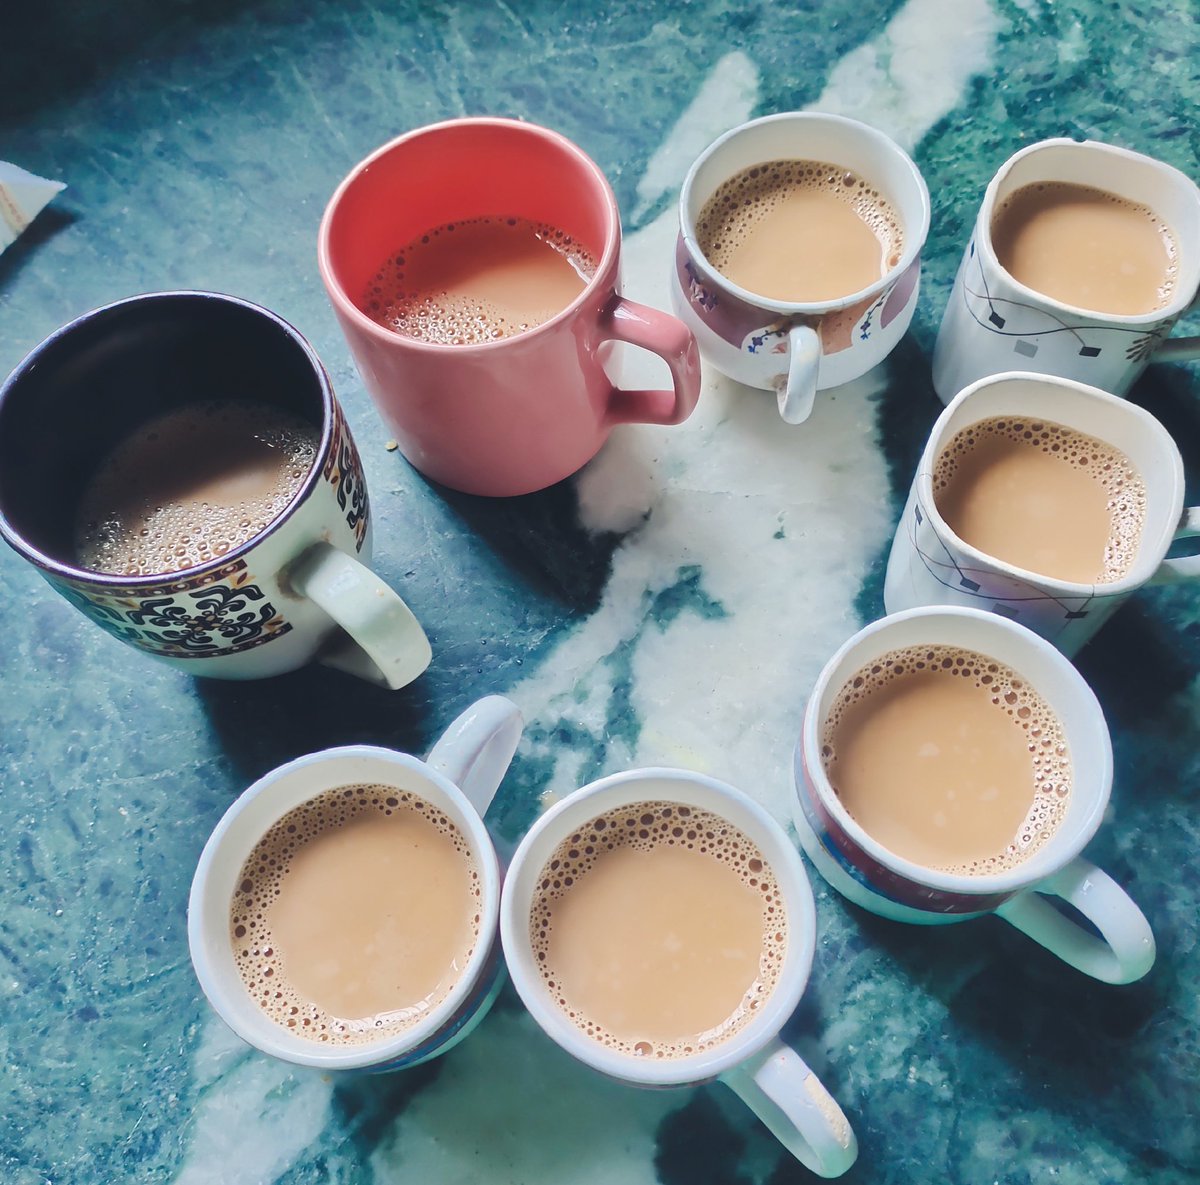 ☕😍

काश एक ख्वाहिश पूरी हो इबादत के बगैर ..
तुम चाय लेकर आओ मेरी इजाजत के बगैर ..

चलो.. चाय पीते है... ☕🤤

#अंतर्राष्ट्रीय_चाय_दिवस